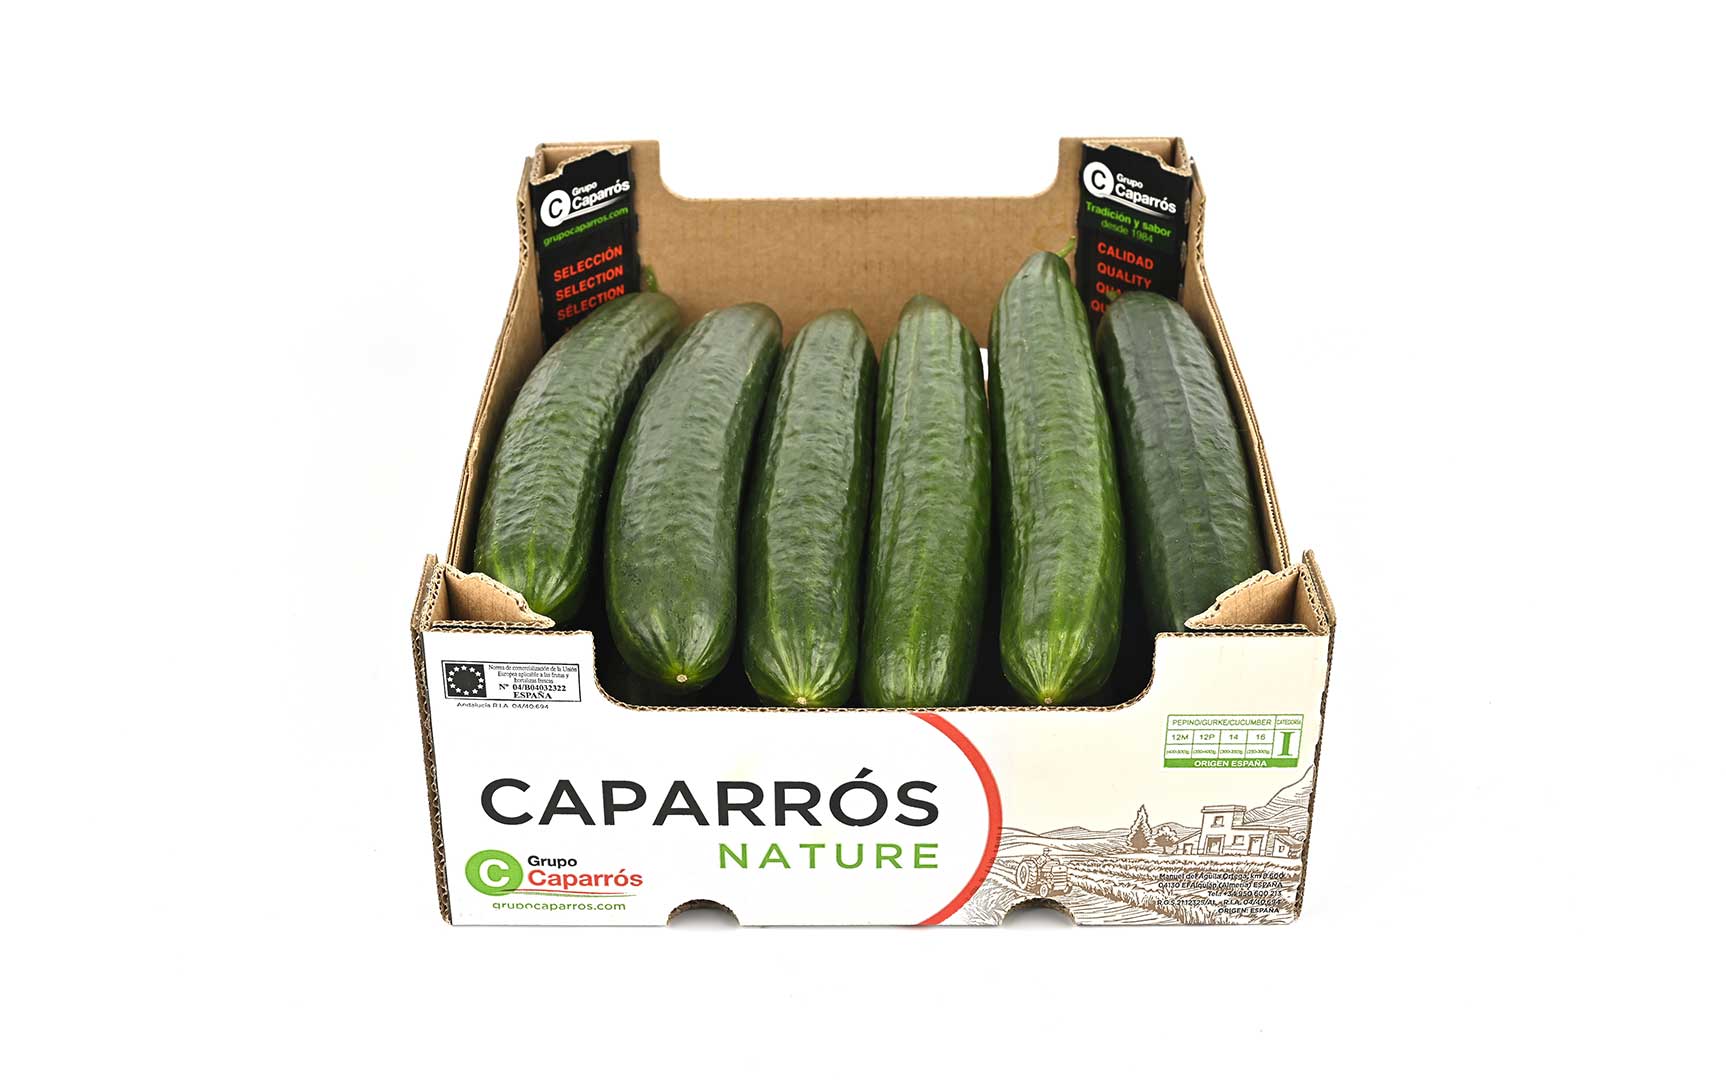 Almería cucumber - Caparrós